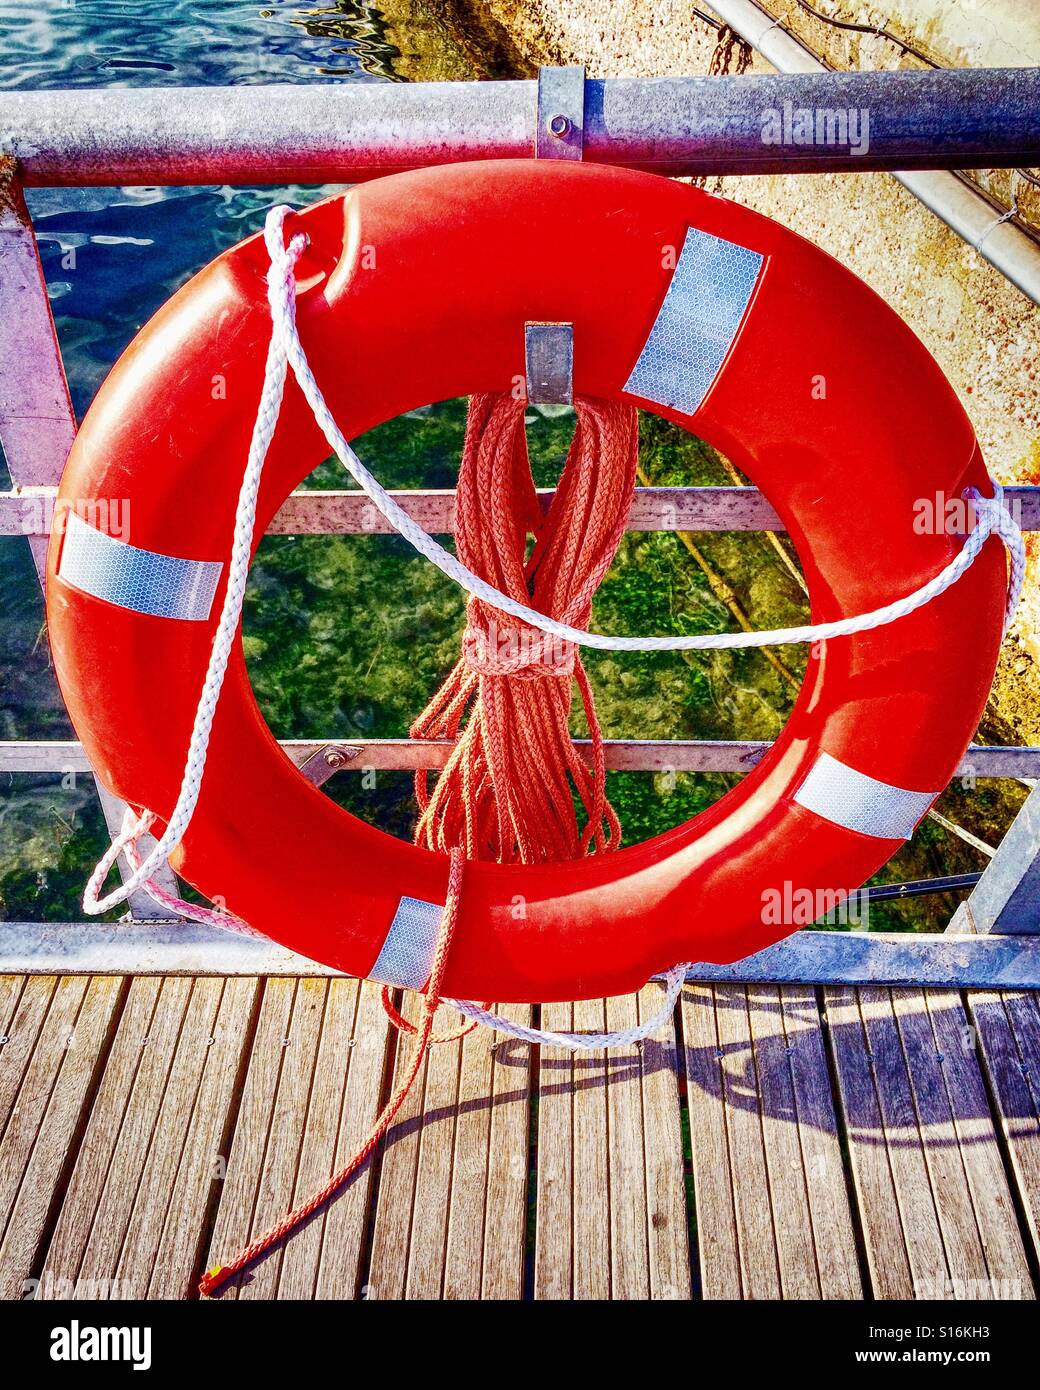 Lifebuoy ring on harbor Stock Photo